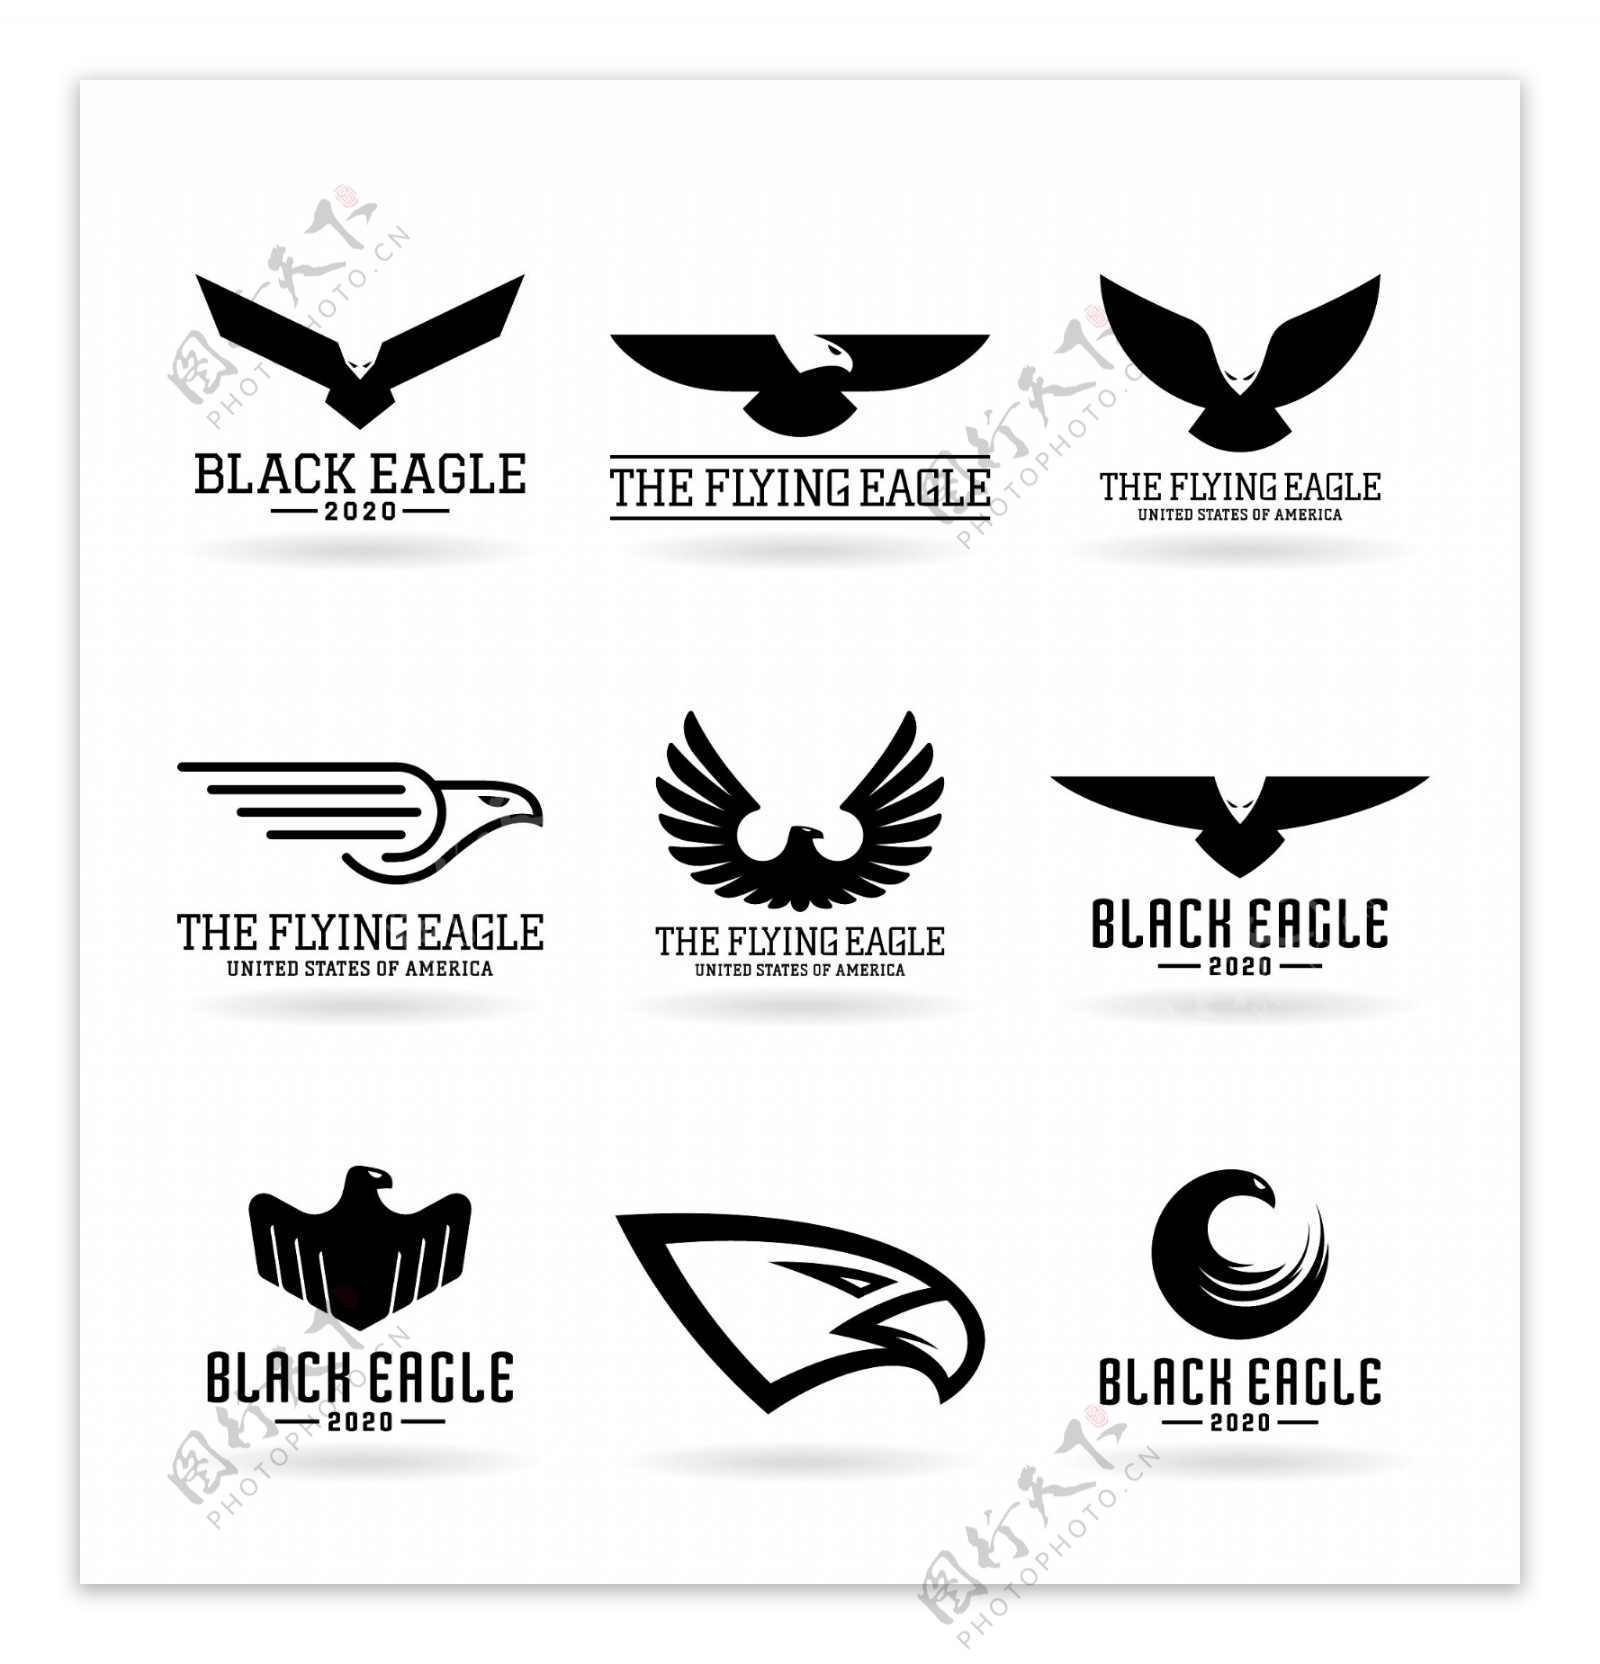 黑色抽象猎鹰logo矢量素材